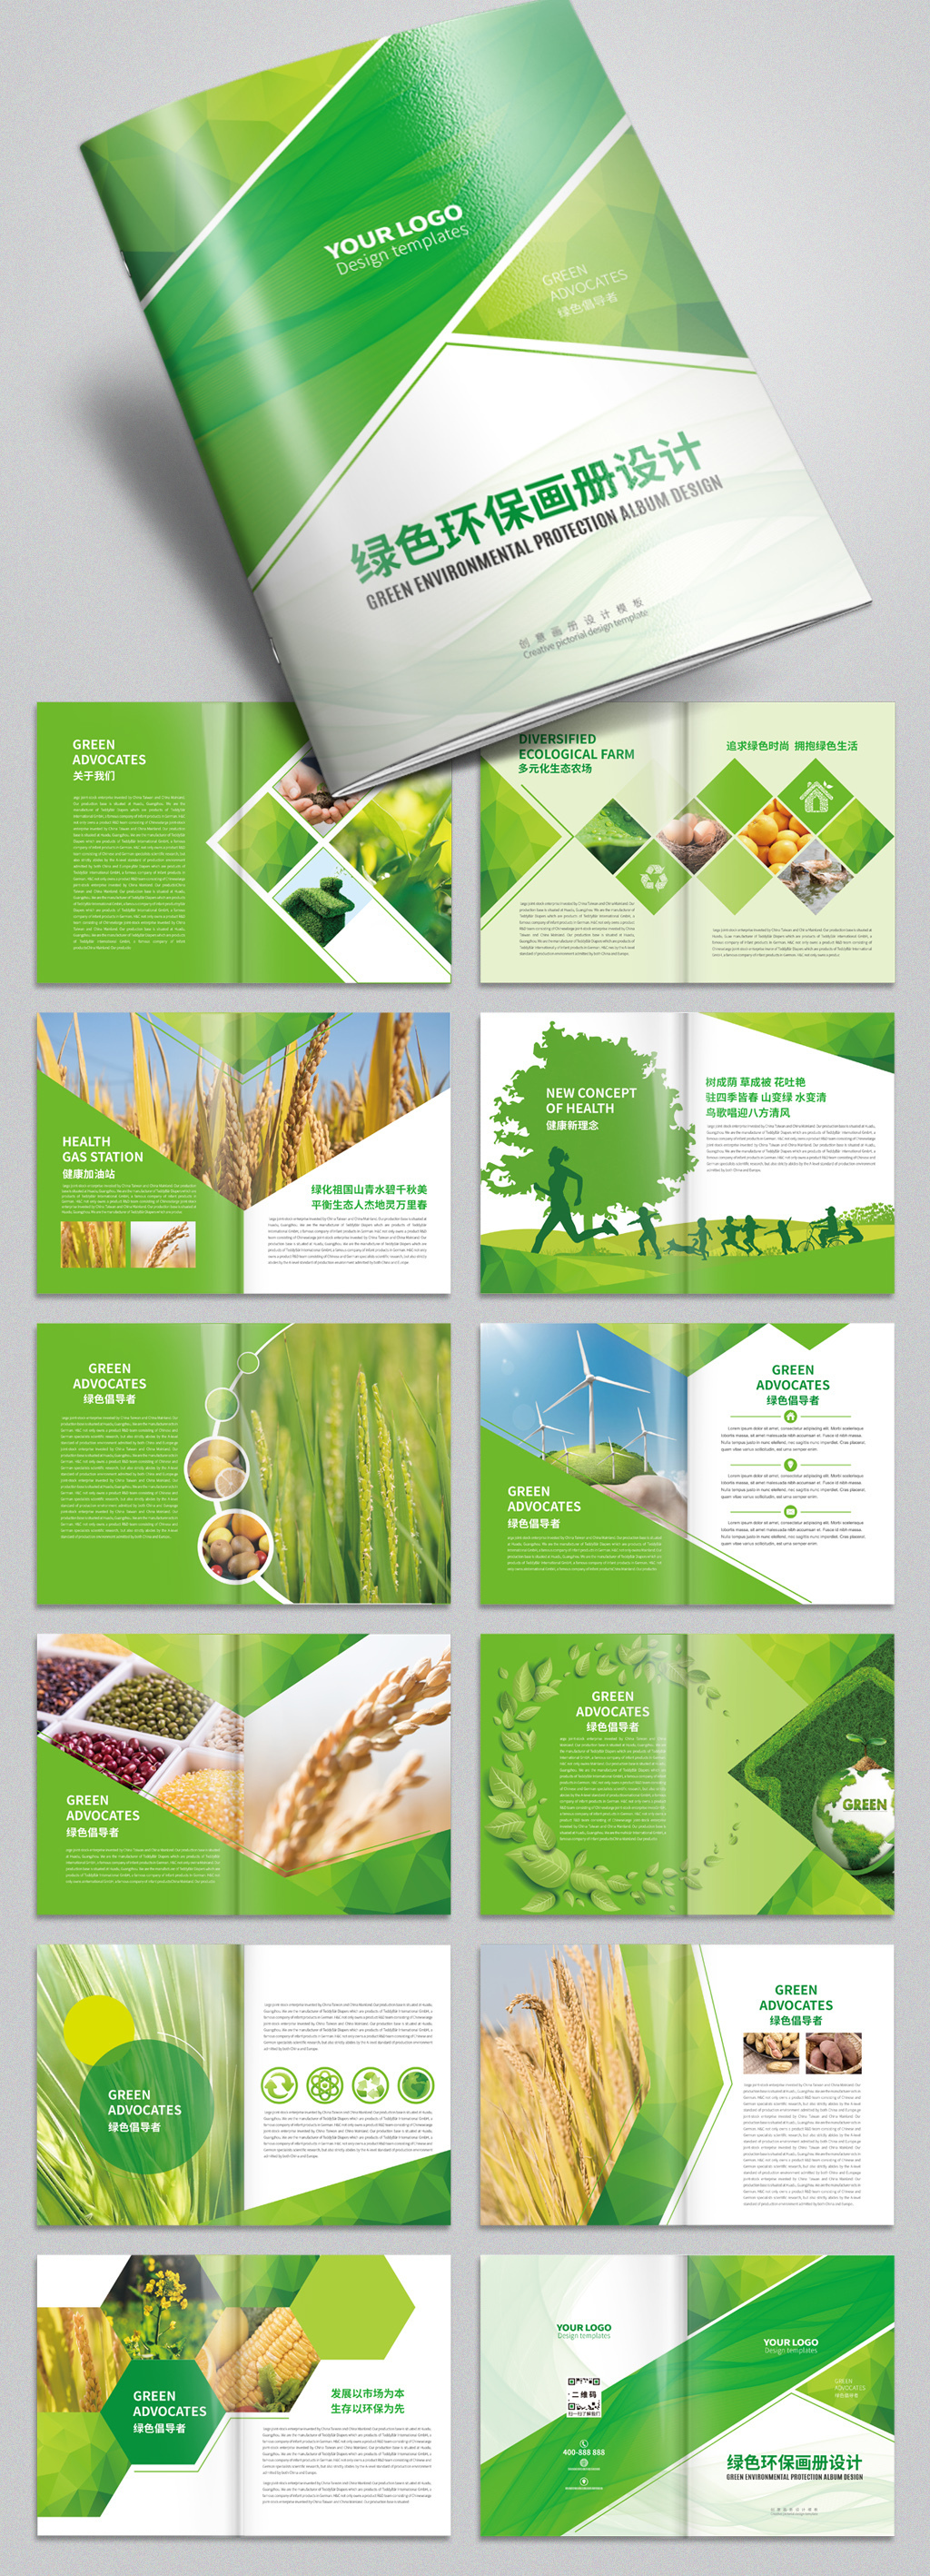 原创绿色环保农业农产品宣传画册设计模板-版权可商用